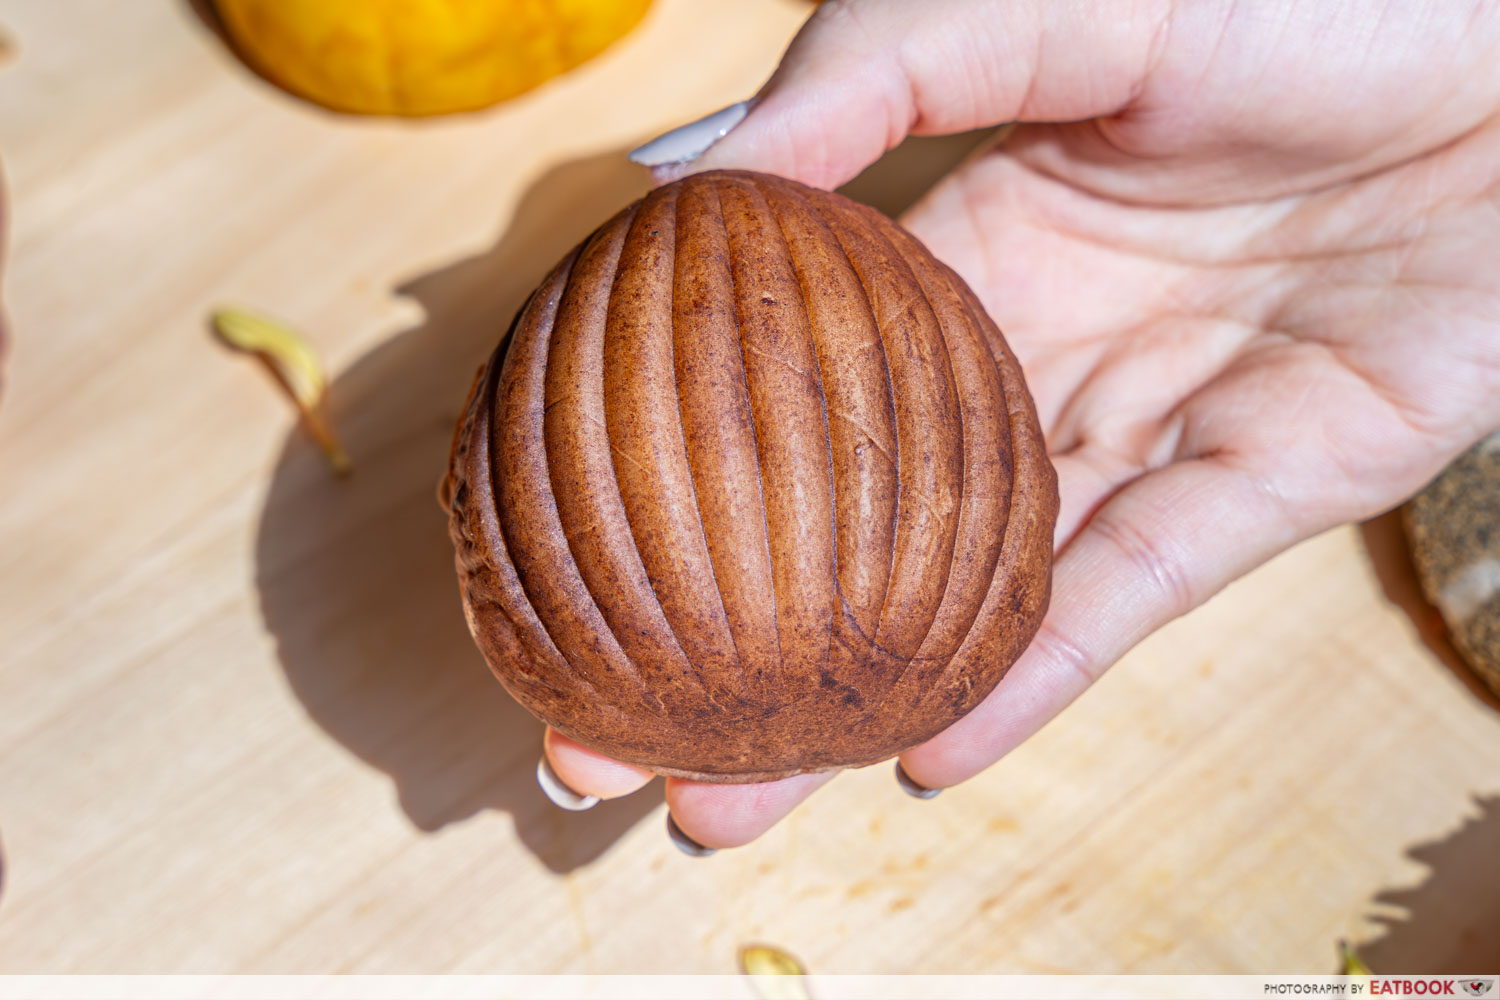 Bakery-1946-bugis-chestnut-bread